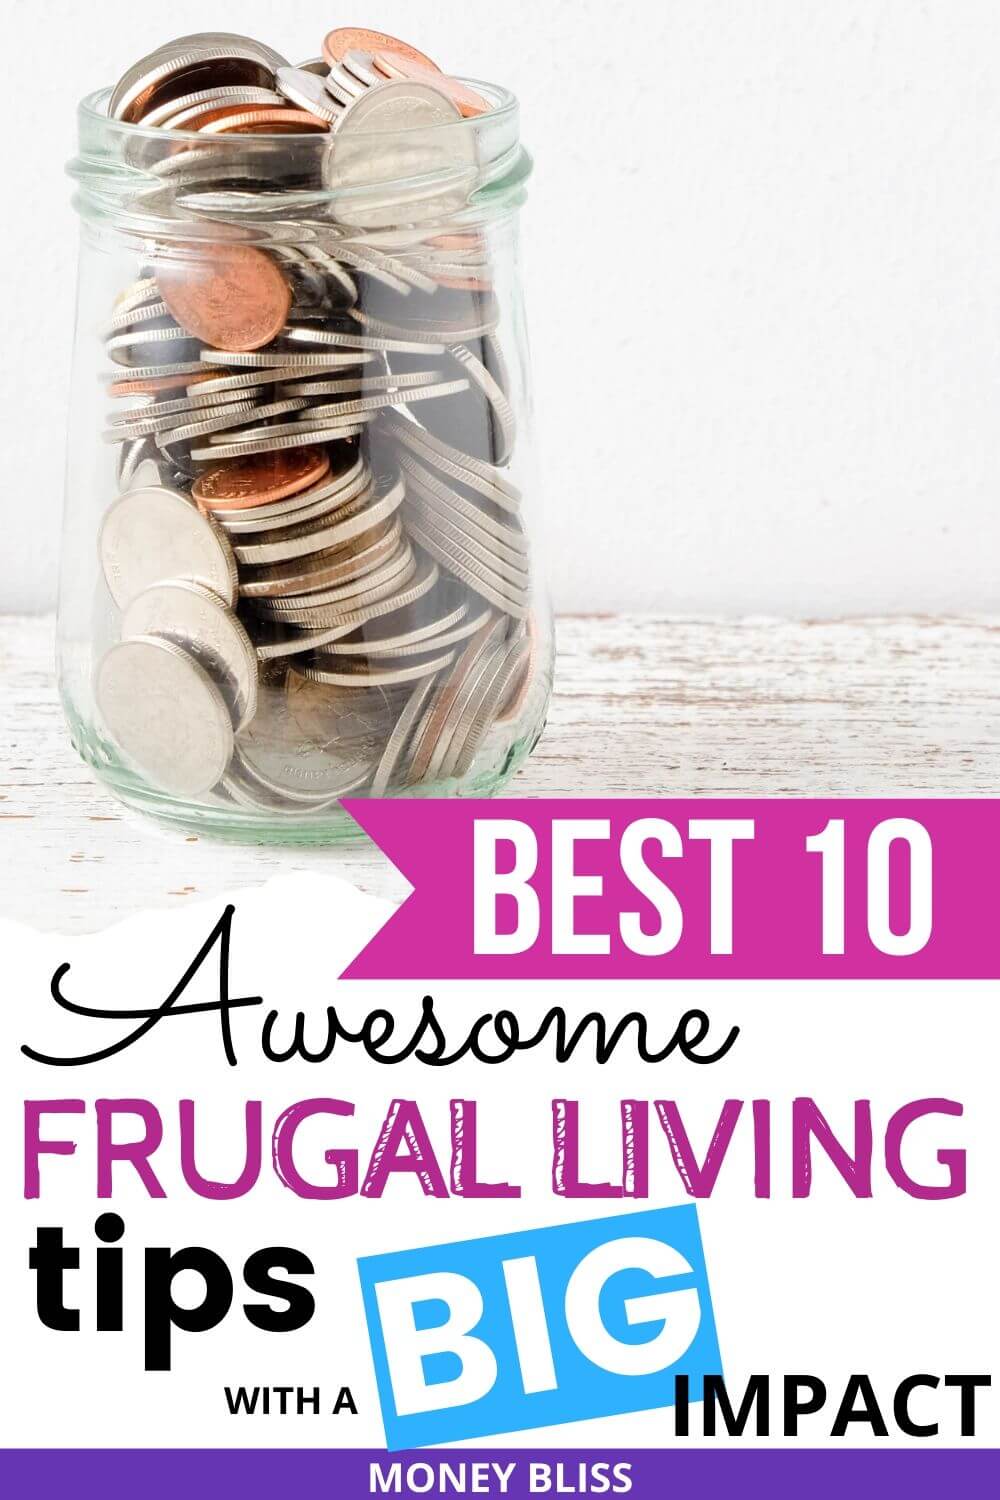 Los 10 consejos más influyentes para una vida frugal con gran impacto